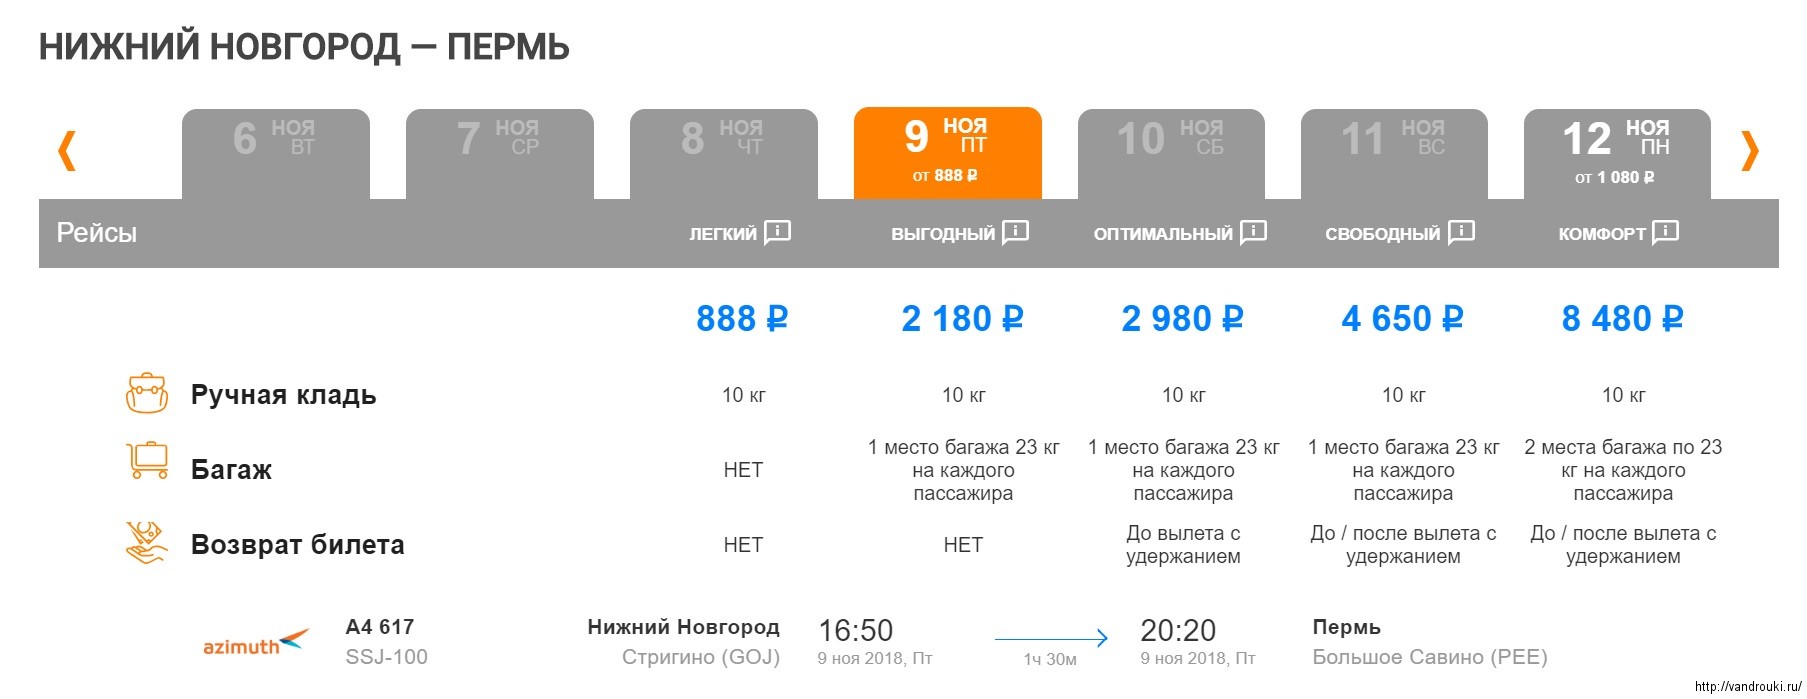 Ростов москва билет на самолет цена цена авиабилета симферополь чебоксары